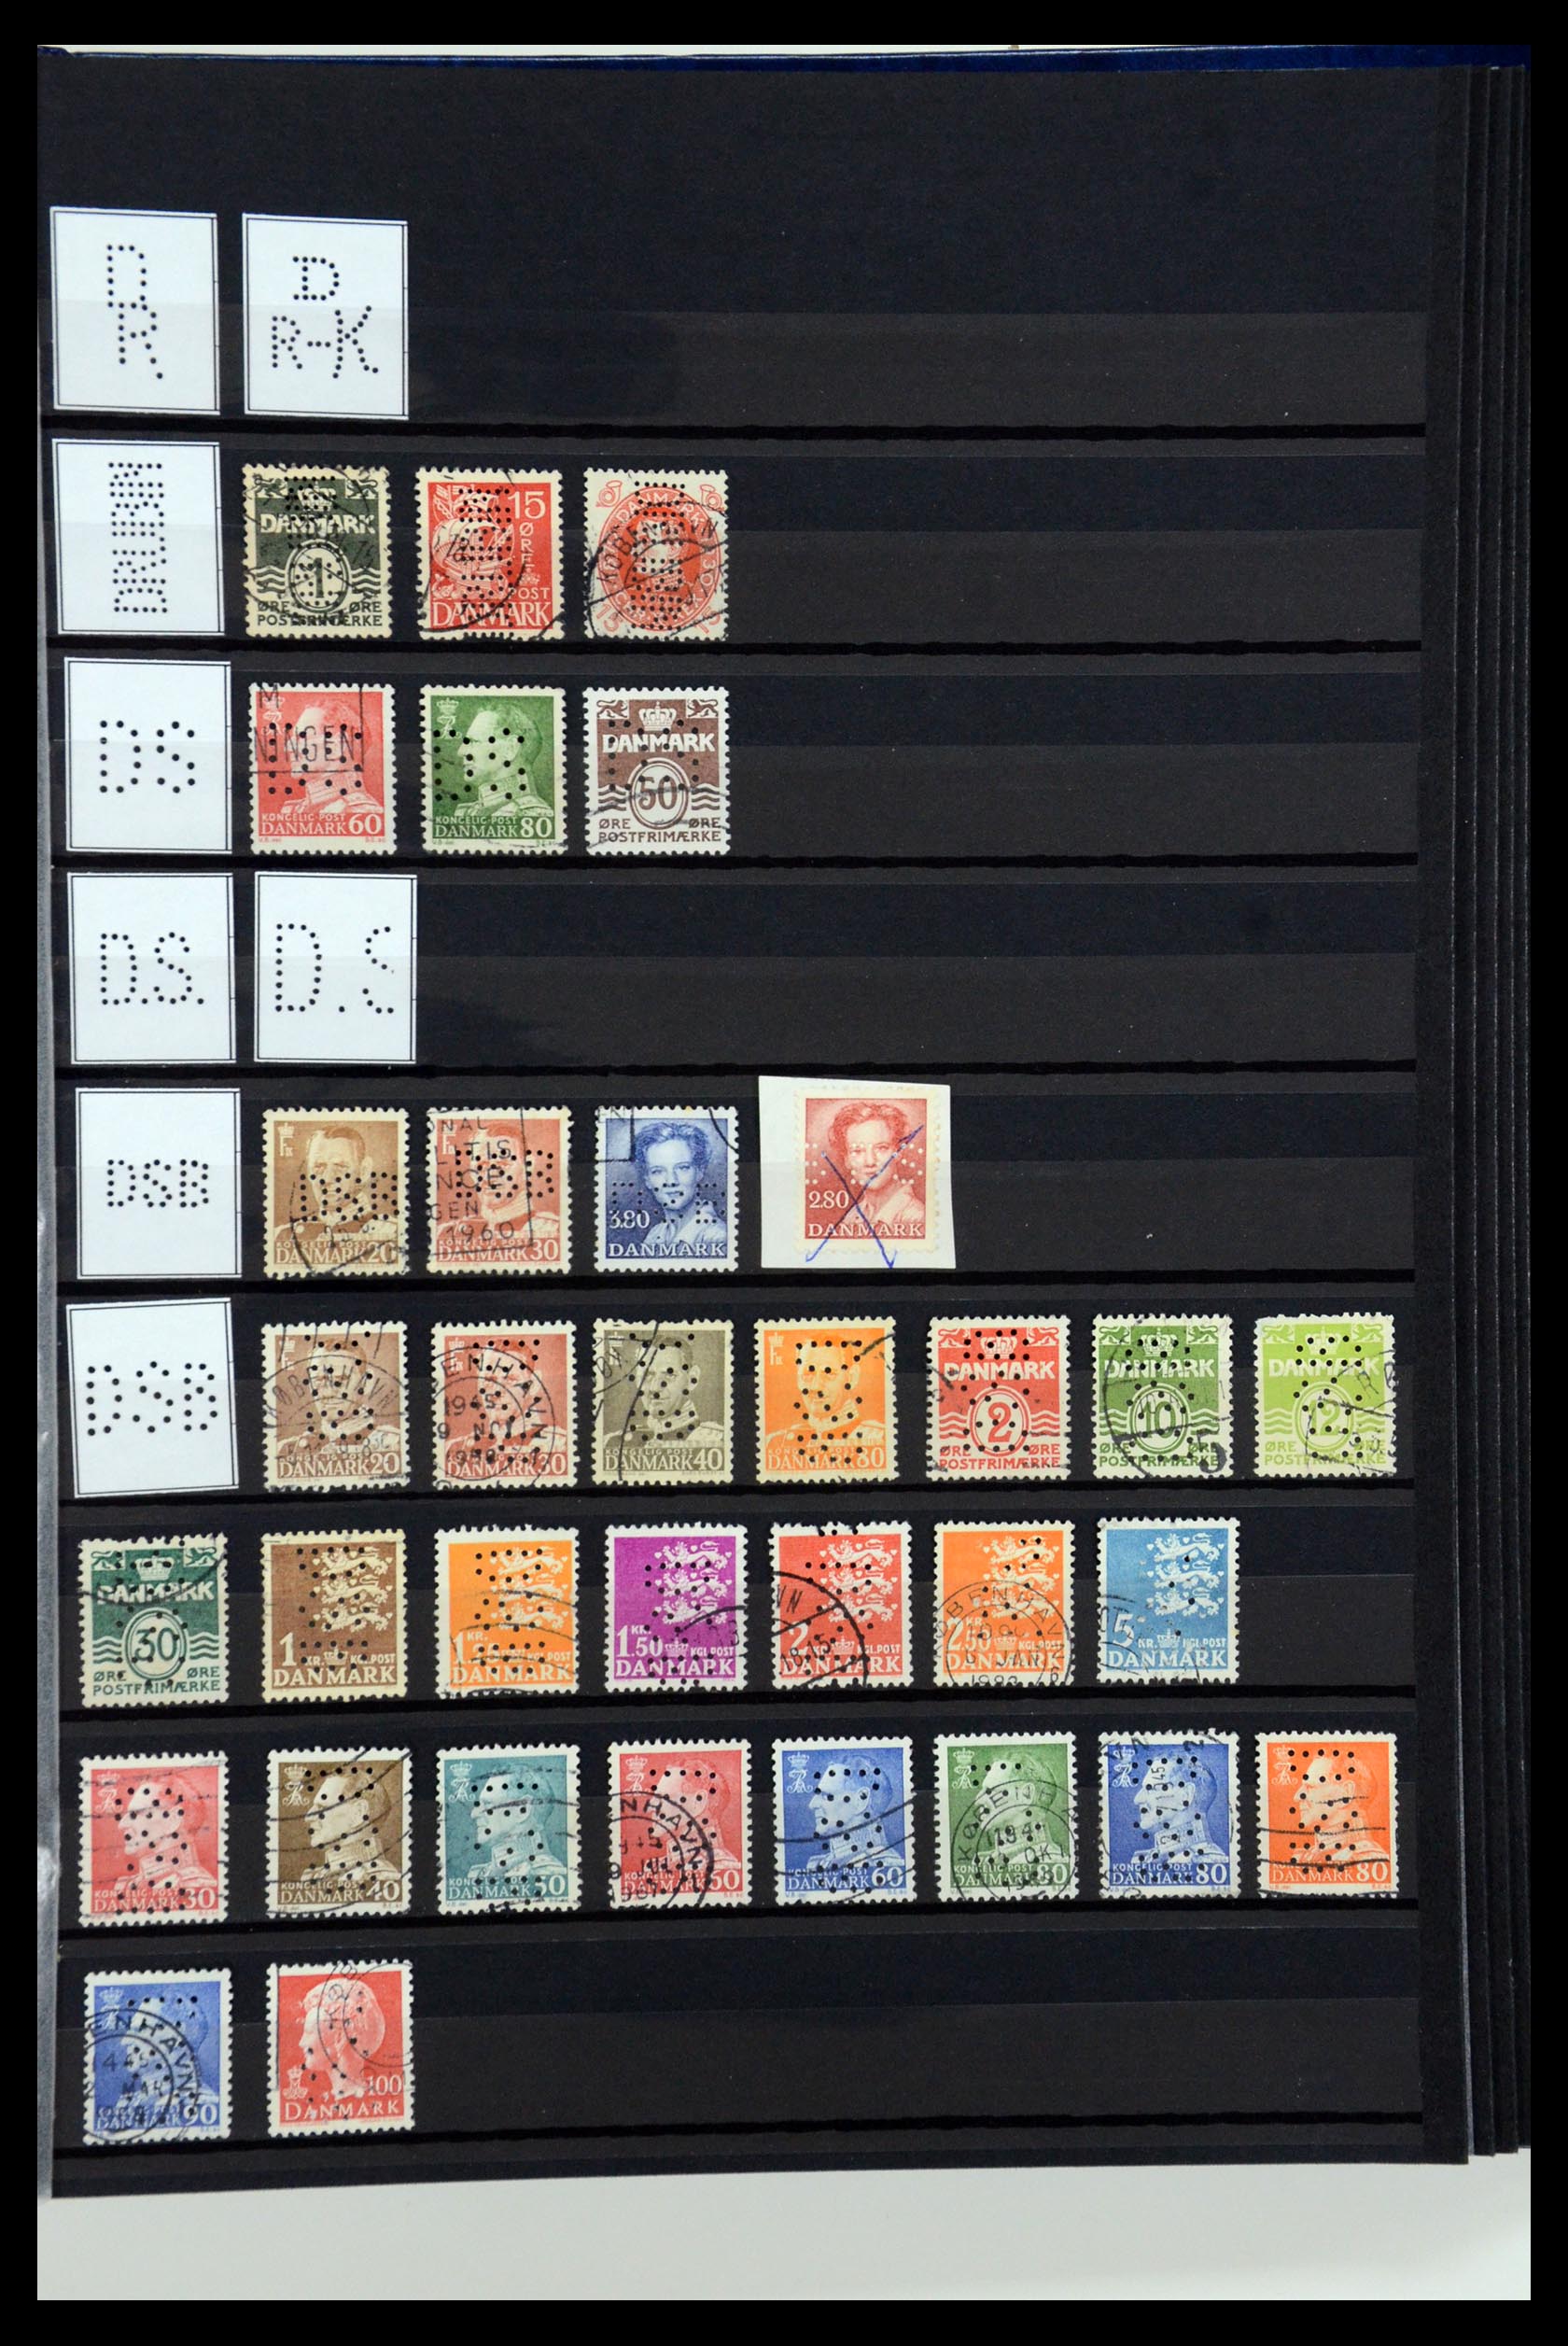 36396 040 - Postzegelverzameling 36396 Denemarken perfins.